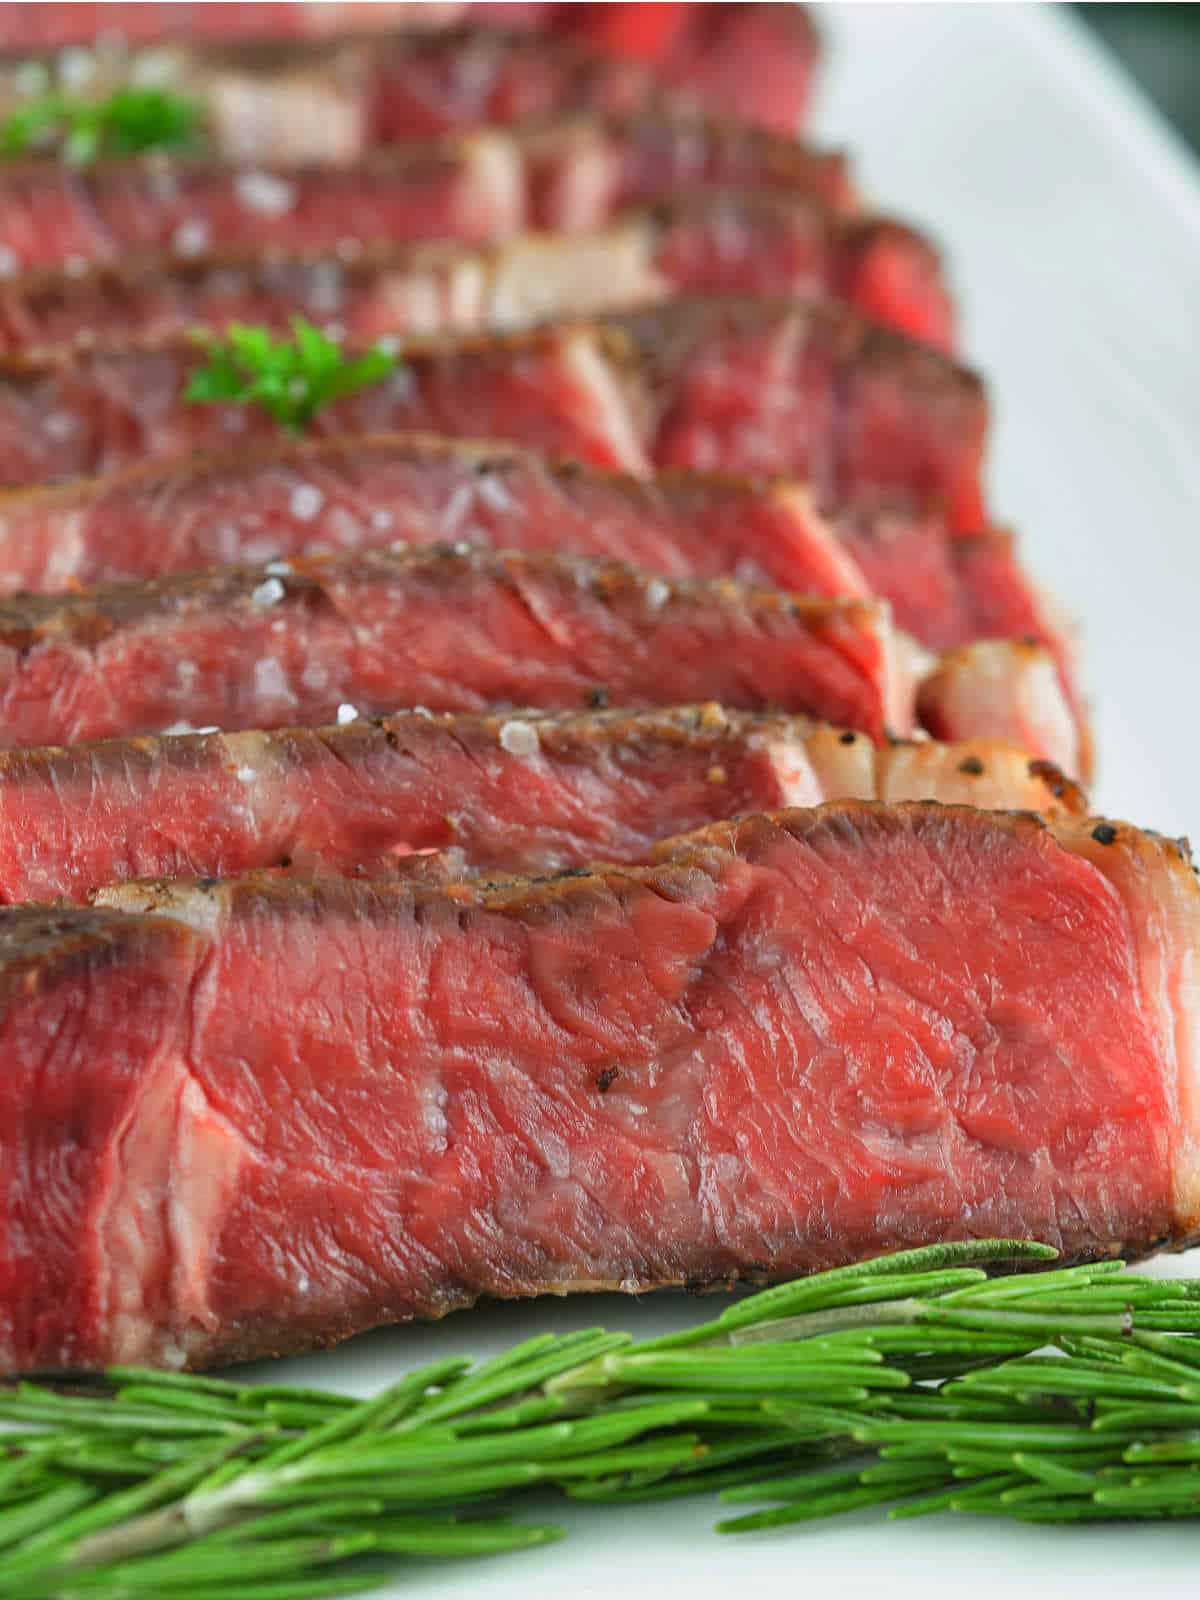 sliced rib eye steak on a platter.